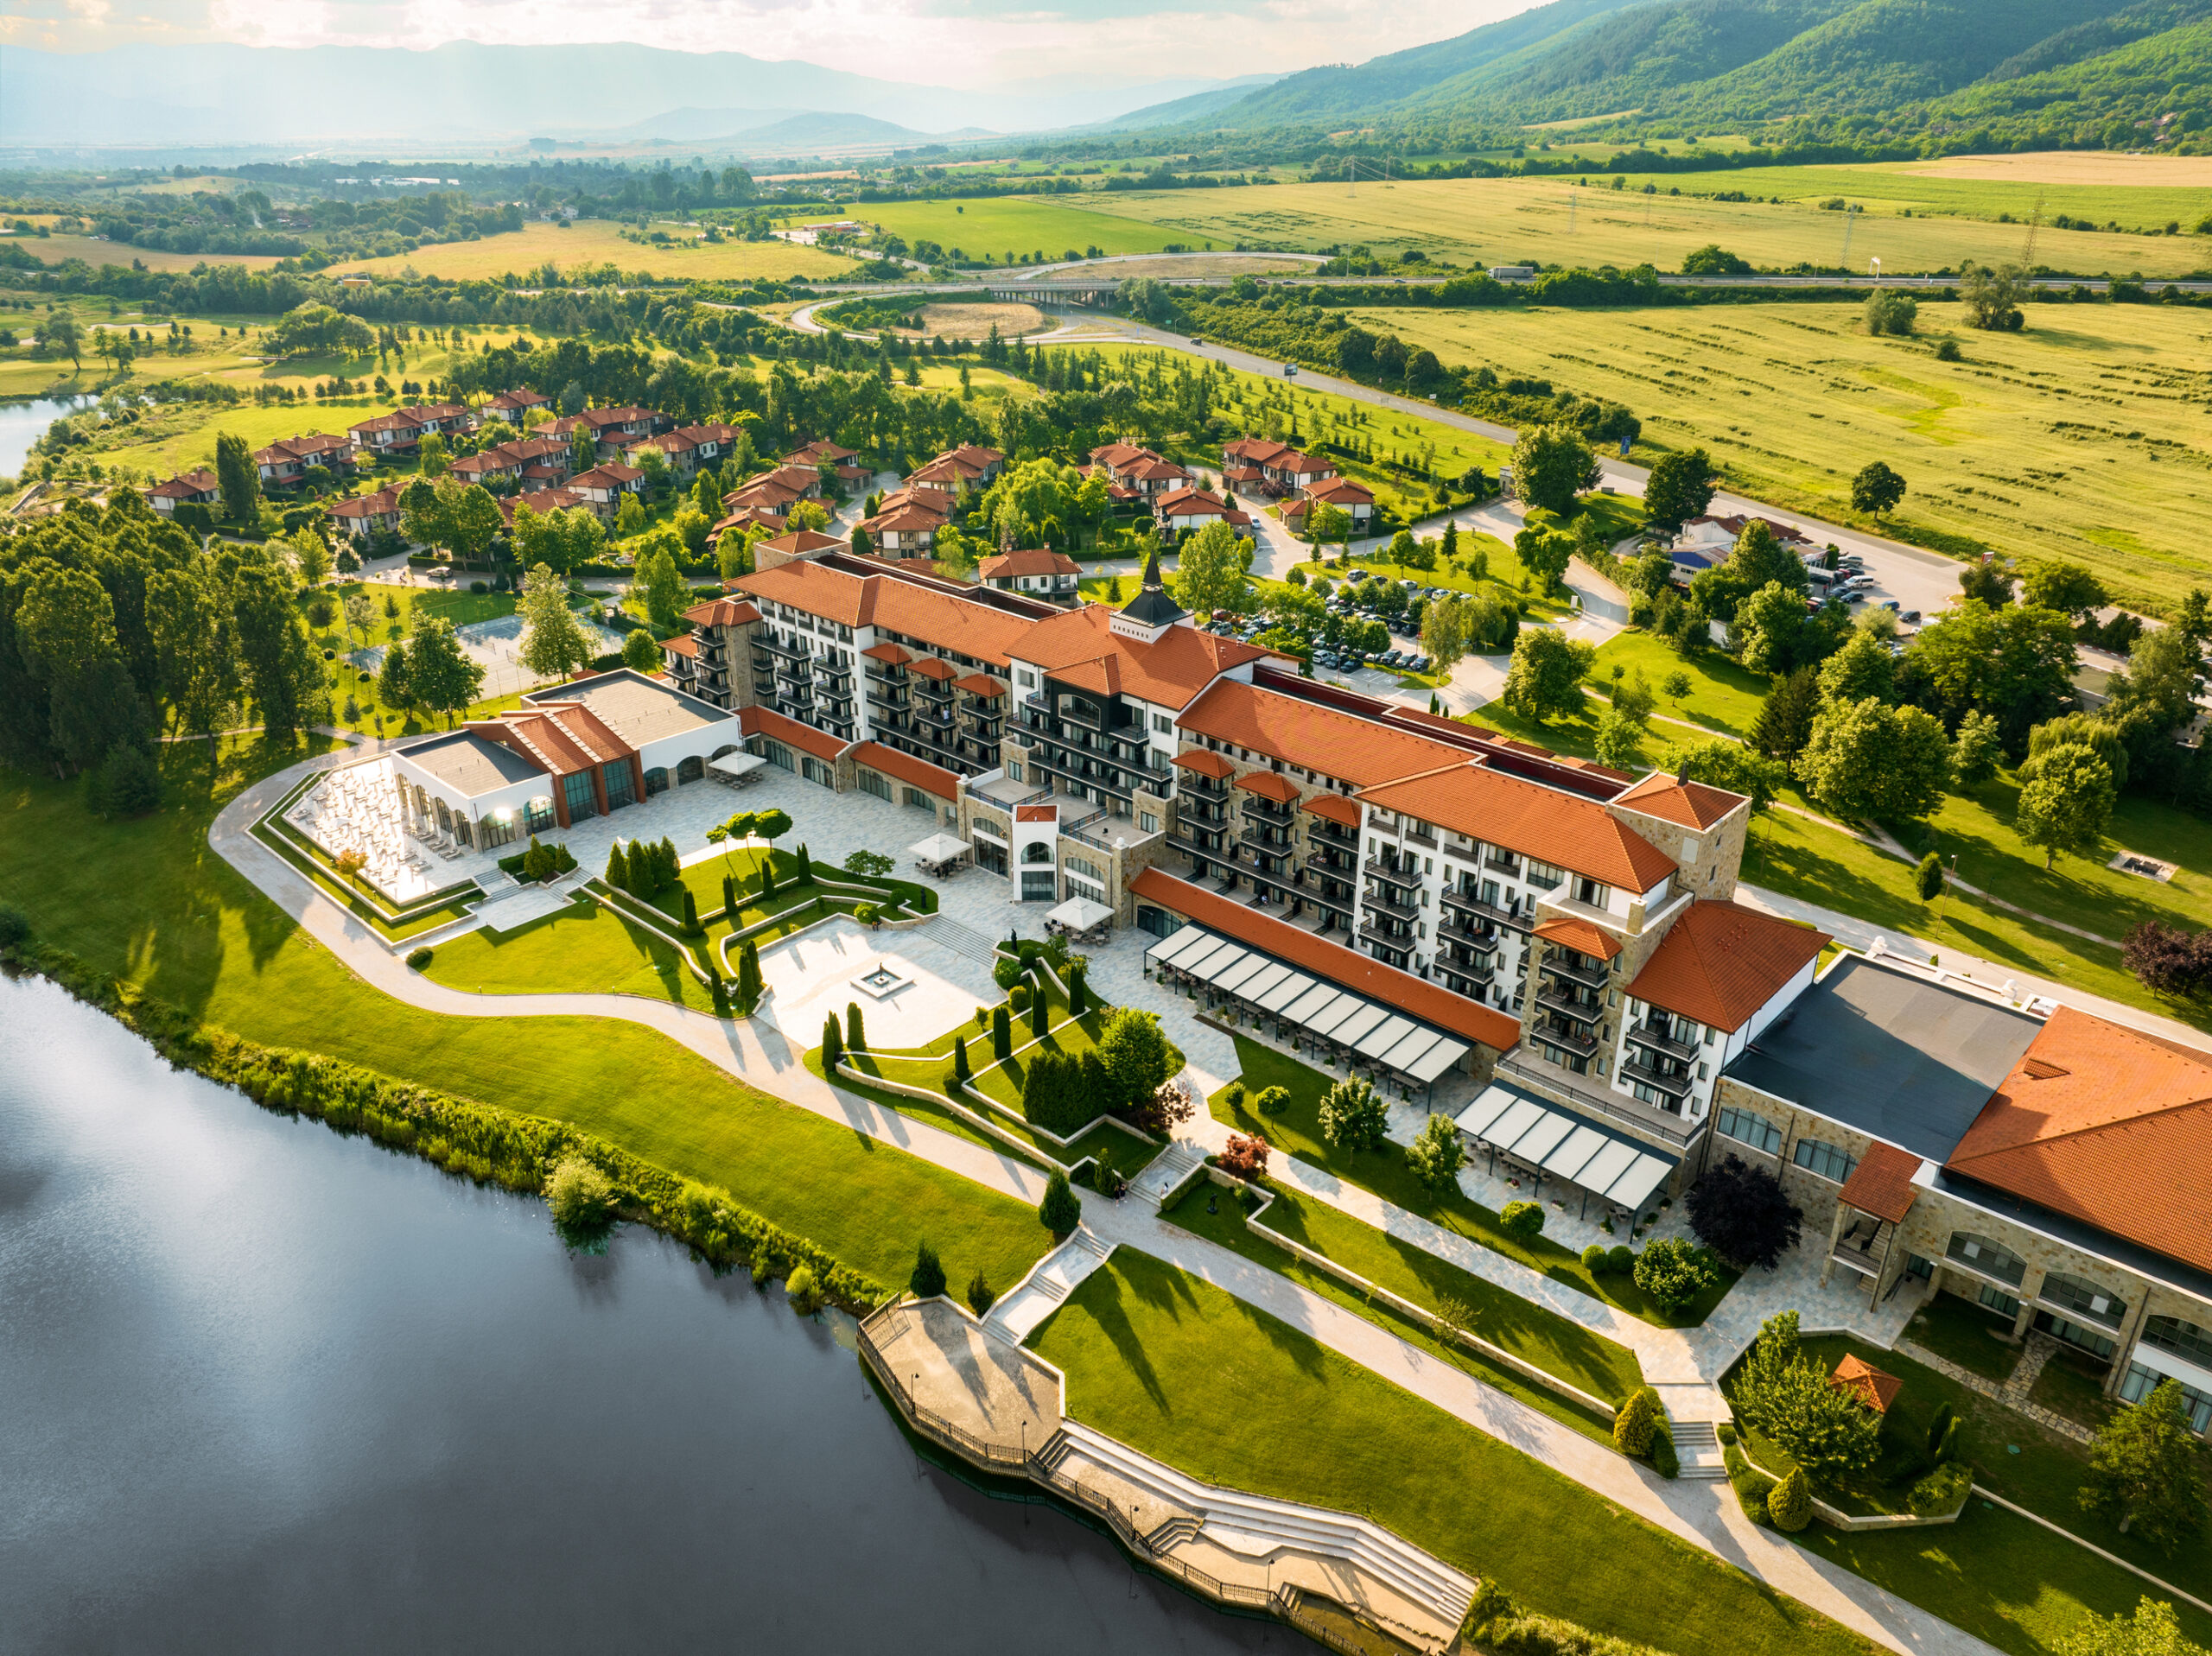 Grupul hotelier de lux Hyatt are în plan să dezvolte primul său hotel în România